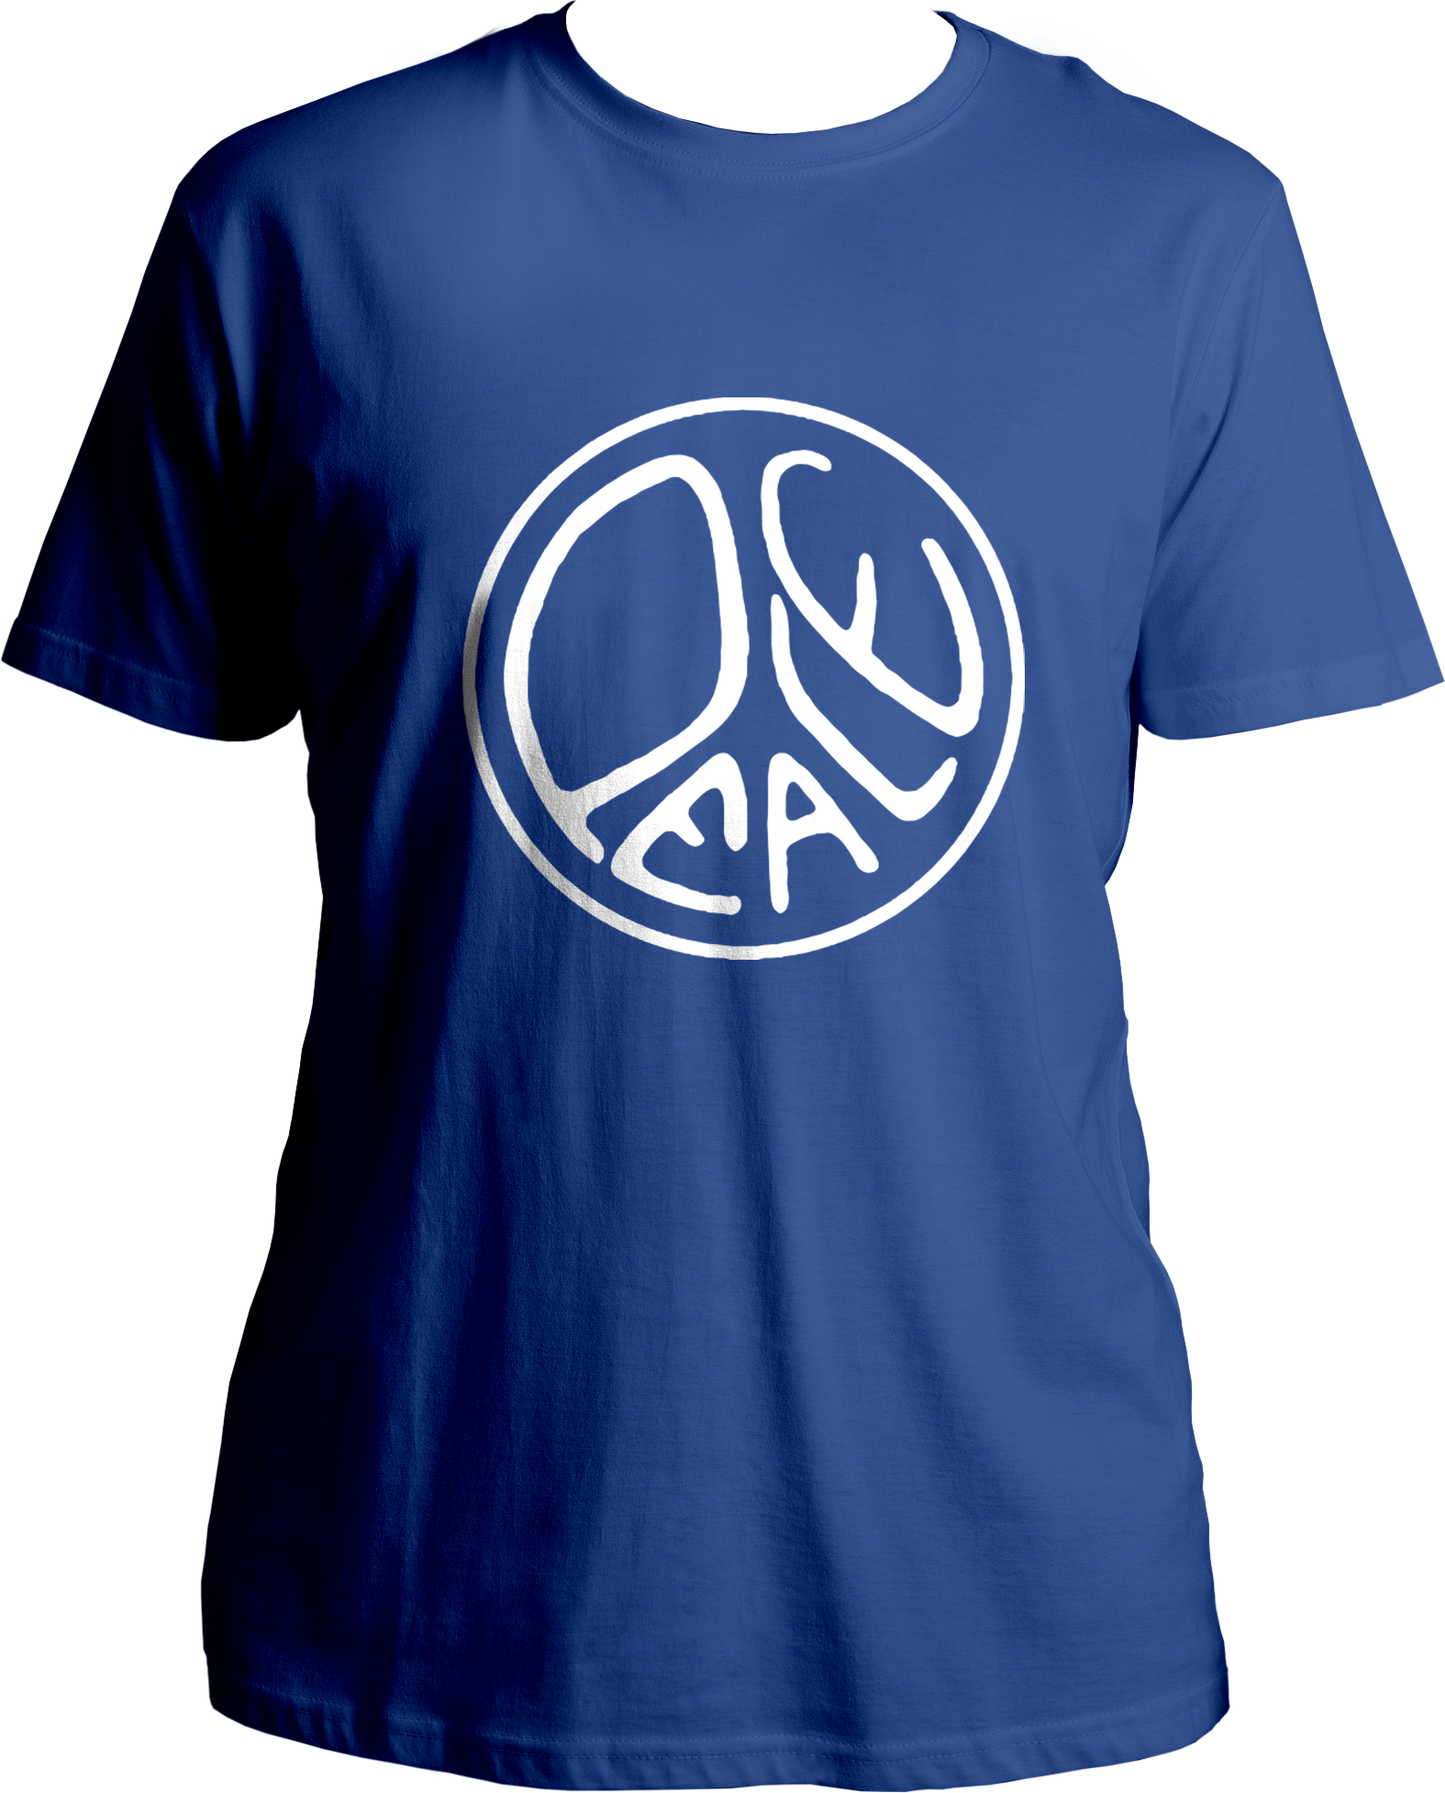 Peace Unisex T-Shirt from Garrari.